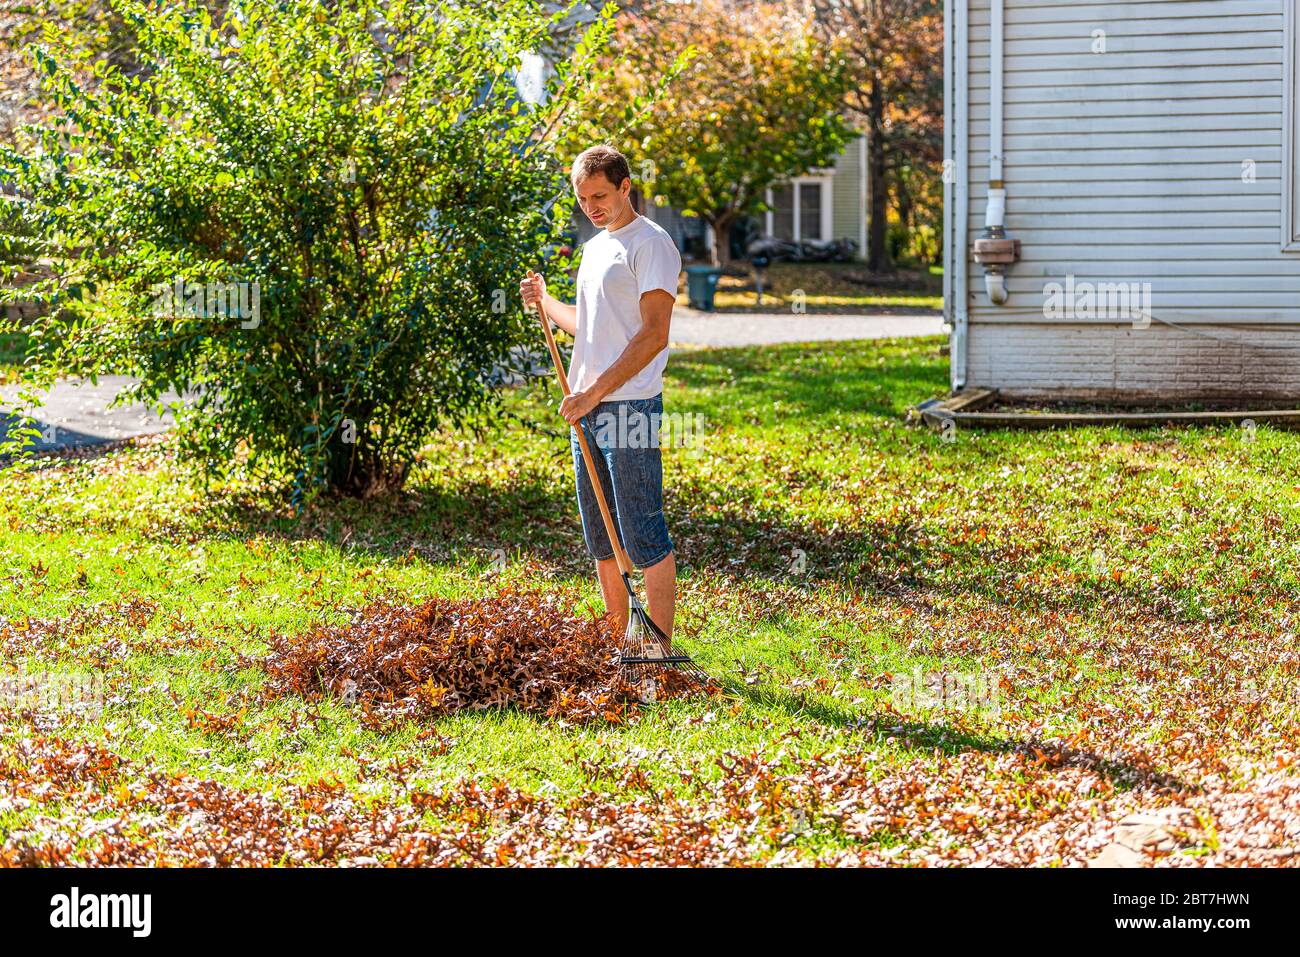 Persona proprietario di abitazione uomo in giardino cortile cortile rastrellare autunno foglie di quercia asciutto palo con rastrello in autunno sole sole da casa Foto Stock